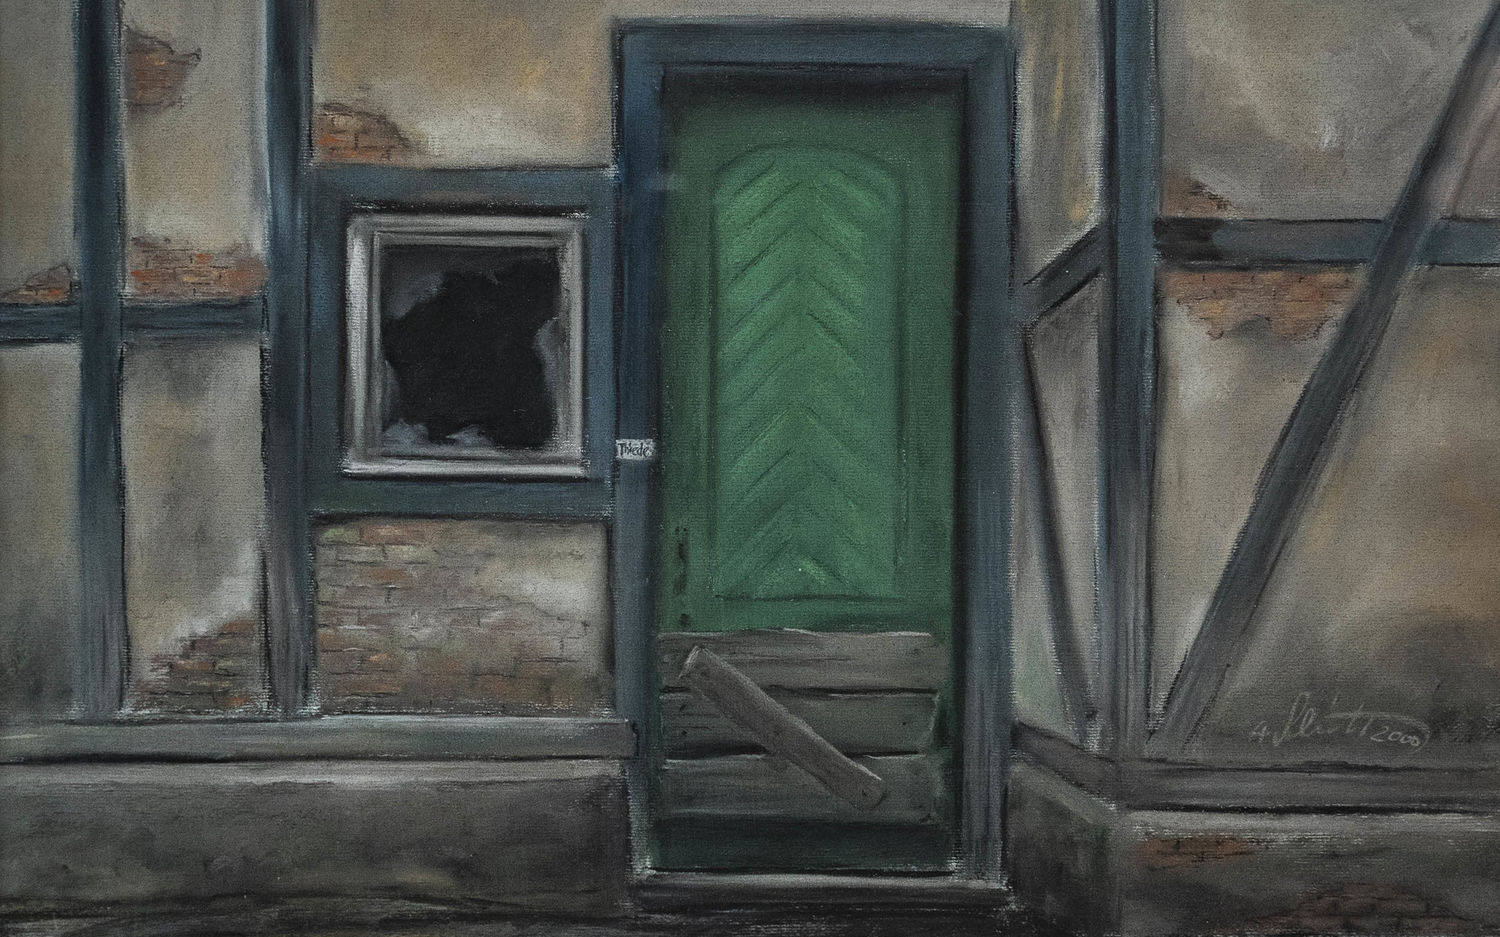 Alfred Schmidt / Die grüne Tür der Remise von 1896 in der Karl Marx Str. 18a, Babelsberg / Gemälde / Pastell auf Leinwand / 46 x 66 cm